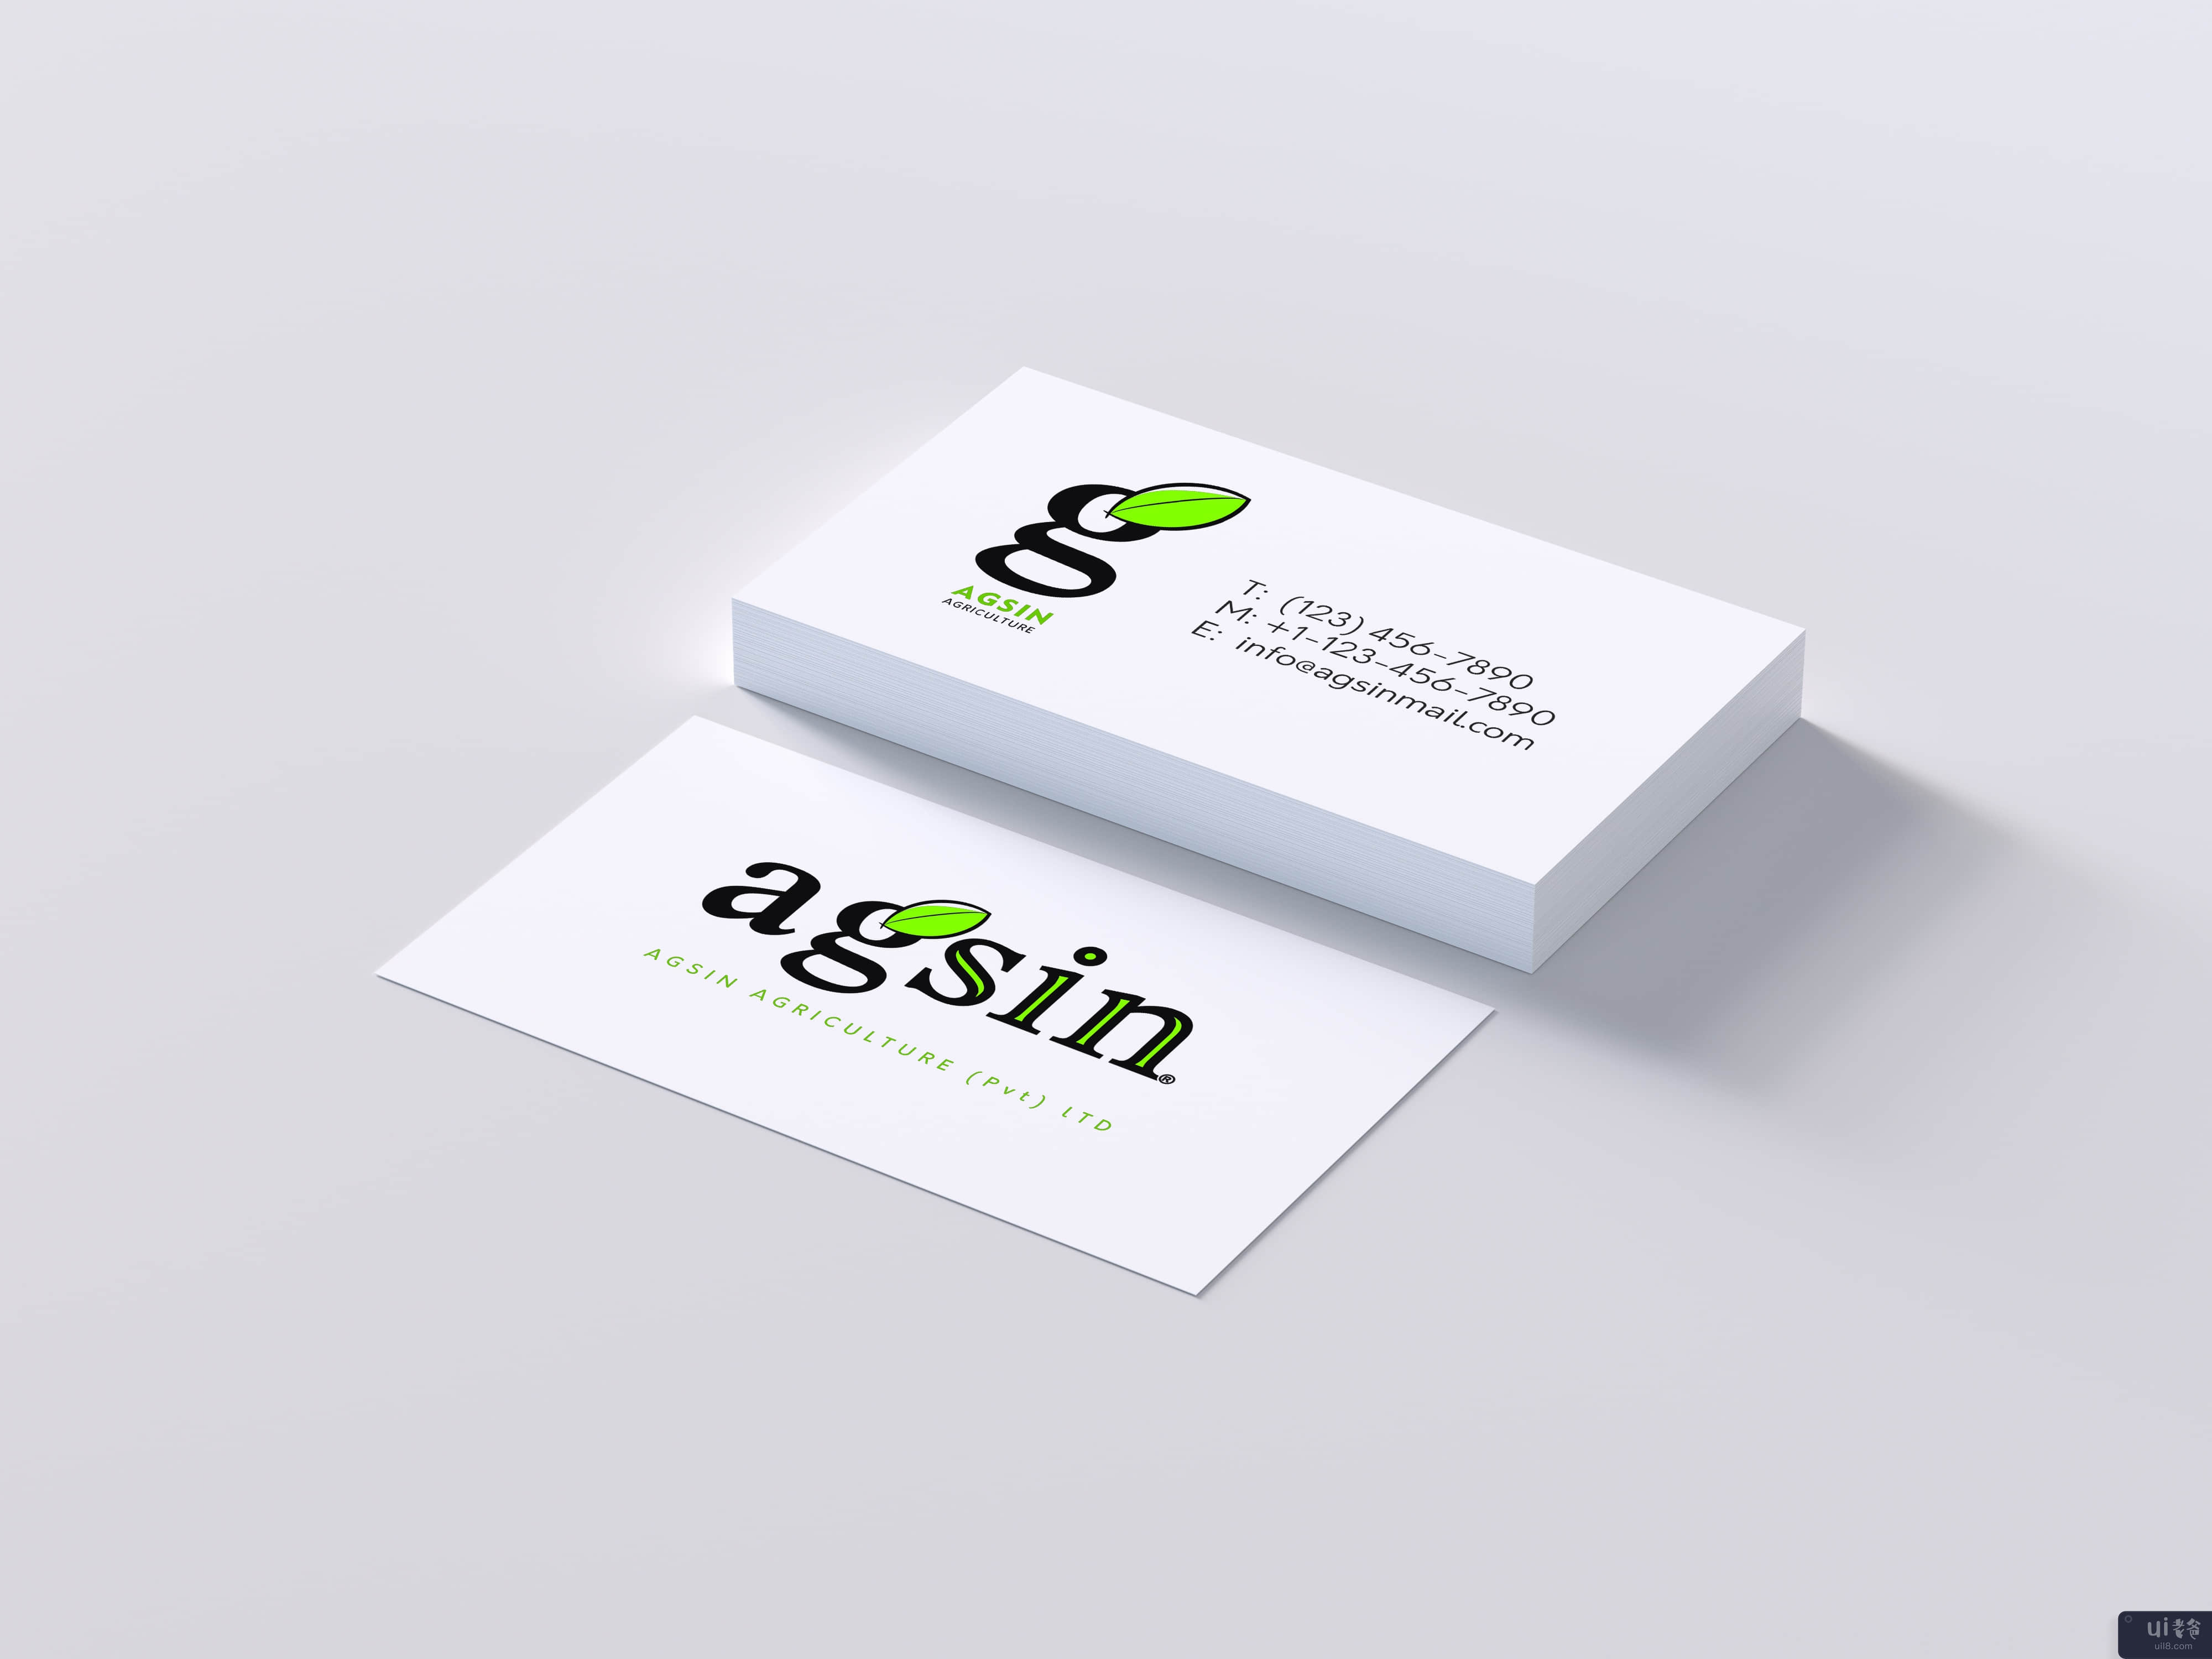 名片挑战 - Agsin 品牌标识(Business Card Challenge - Agsin Brand Identity)插图2